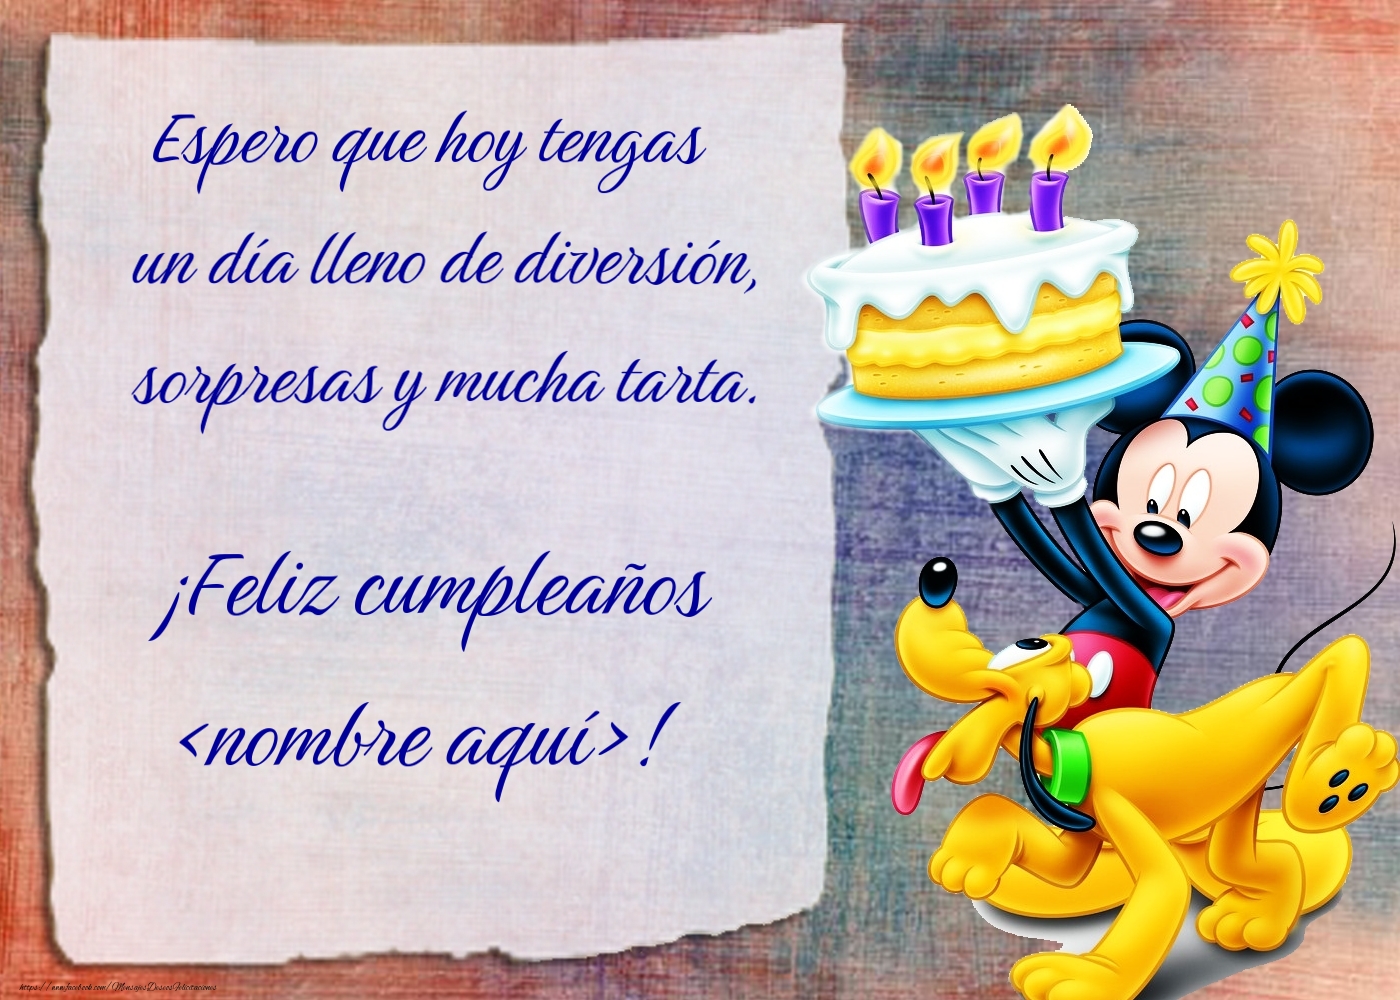 Felicitaciones Personalizadas para niños - Mickey Mouse, Pluto y un enorme pastel con velas encendidas